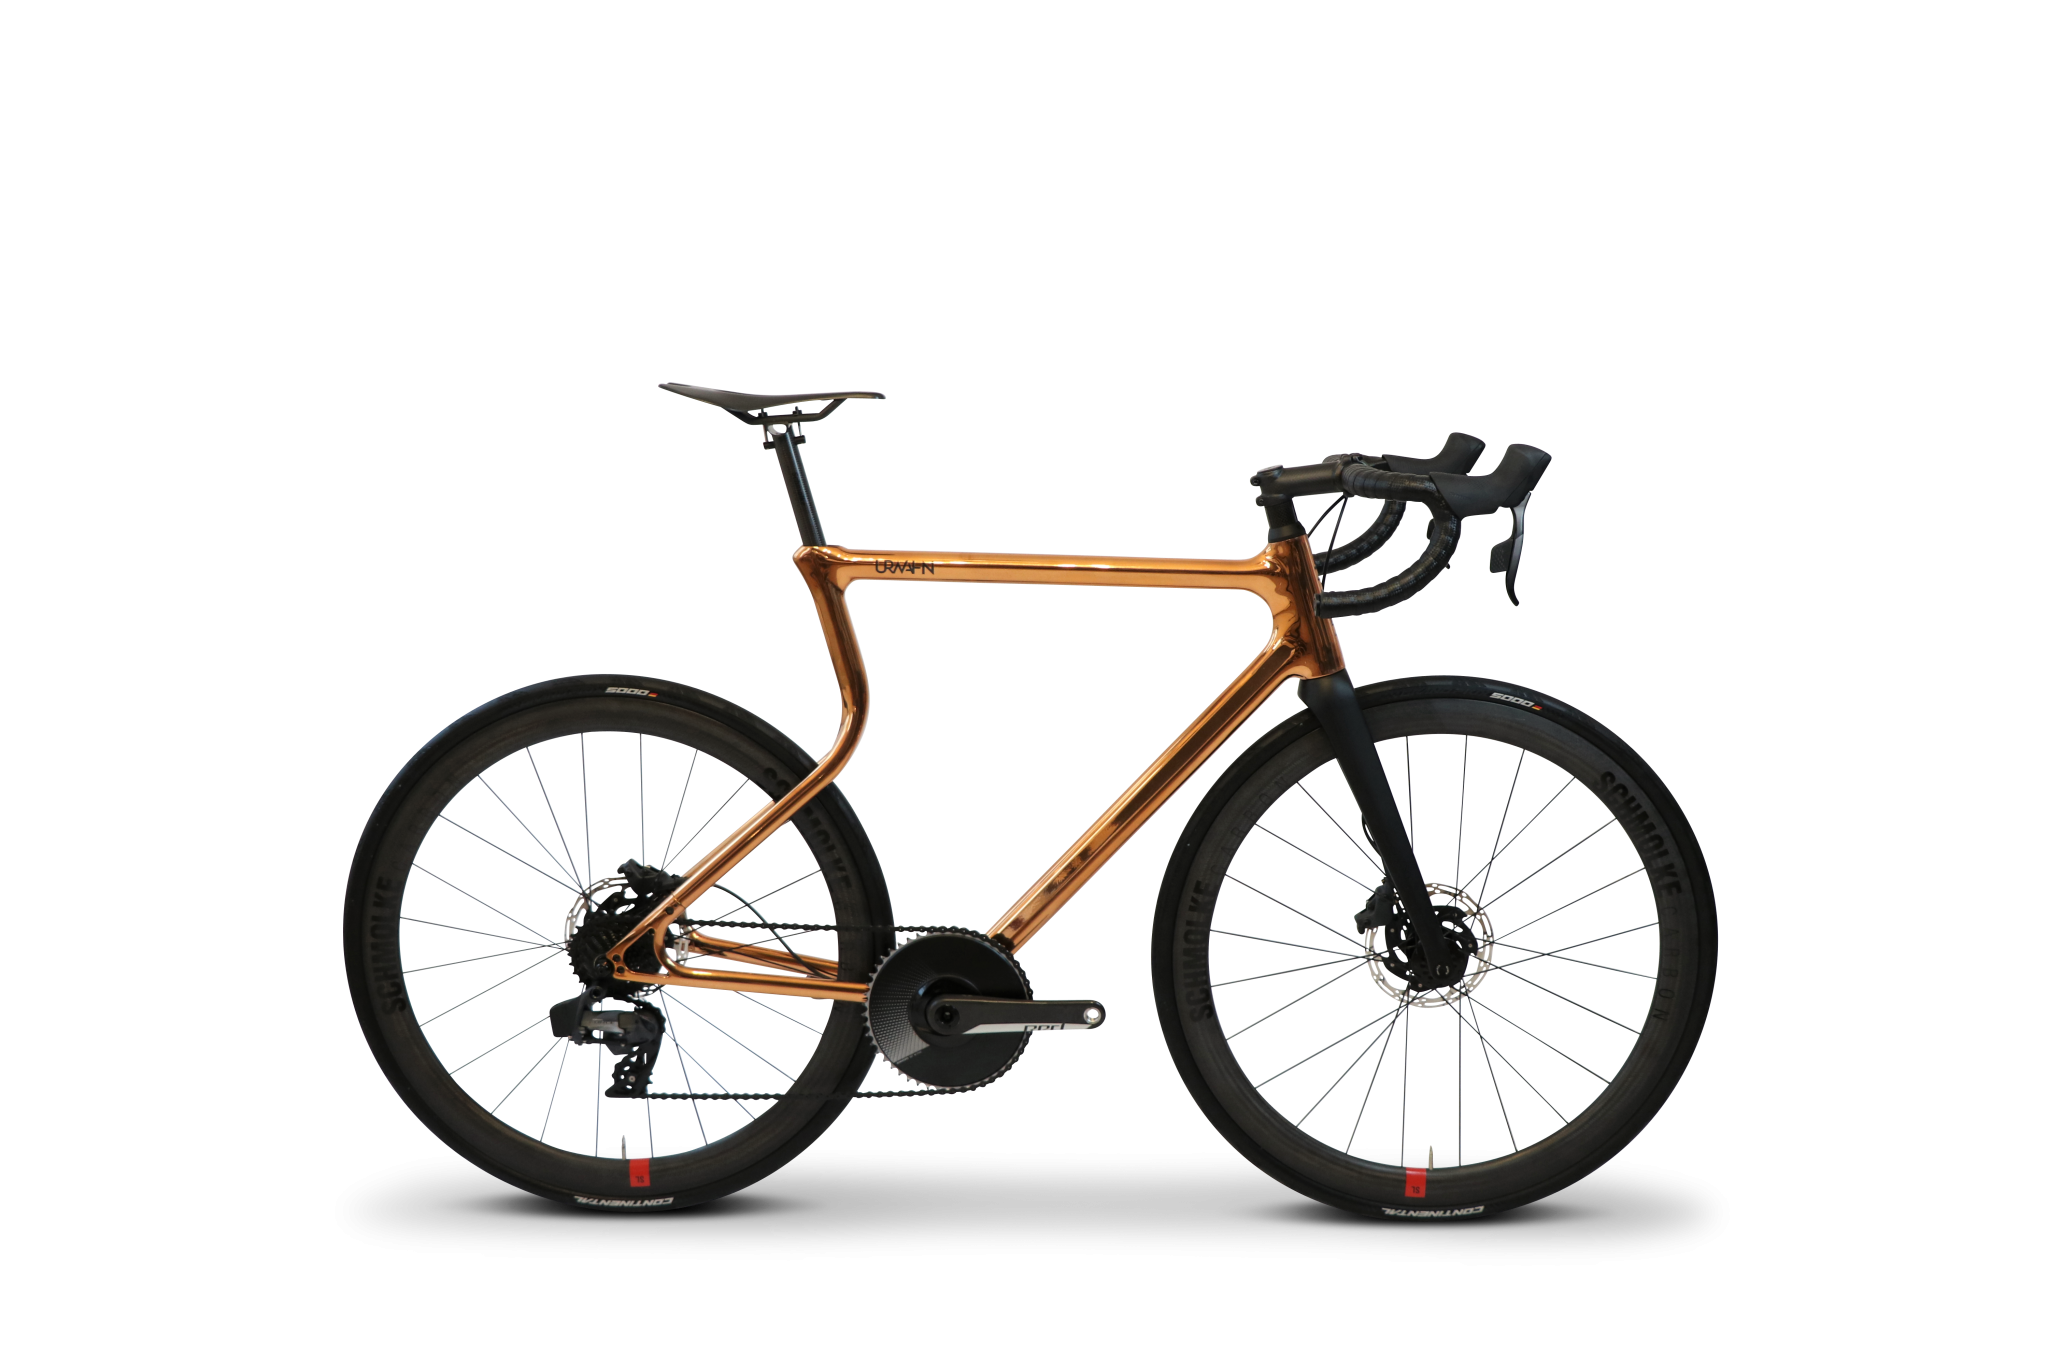 带有3D打印钢架的自行车。照片通过Urwahn/Schmolke拍摄。